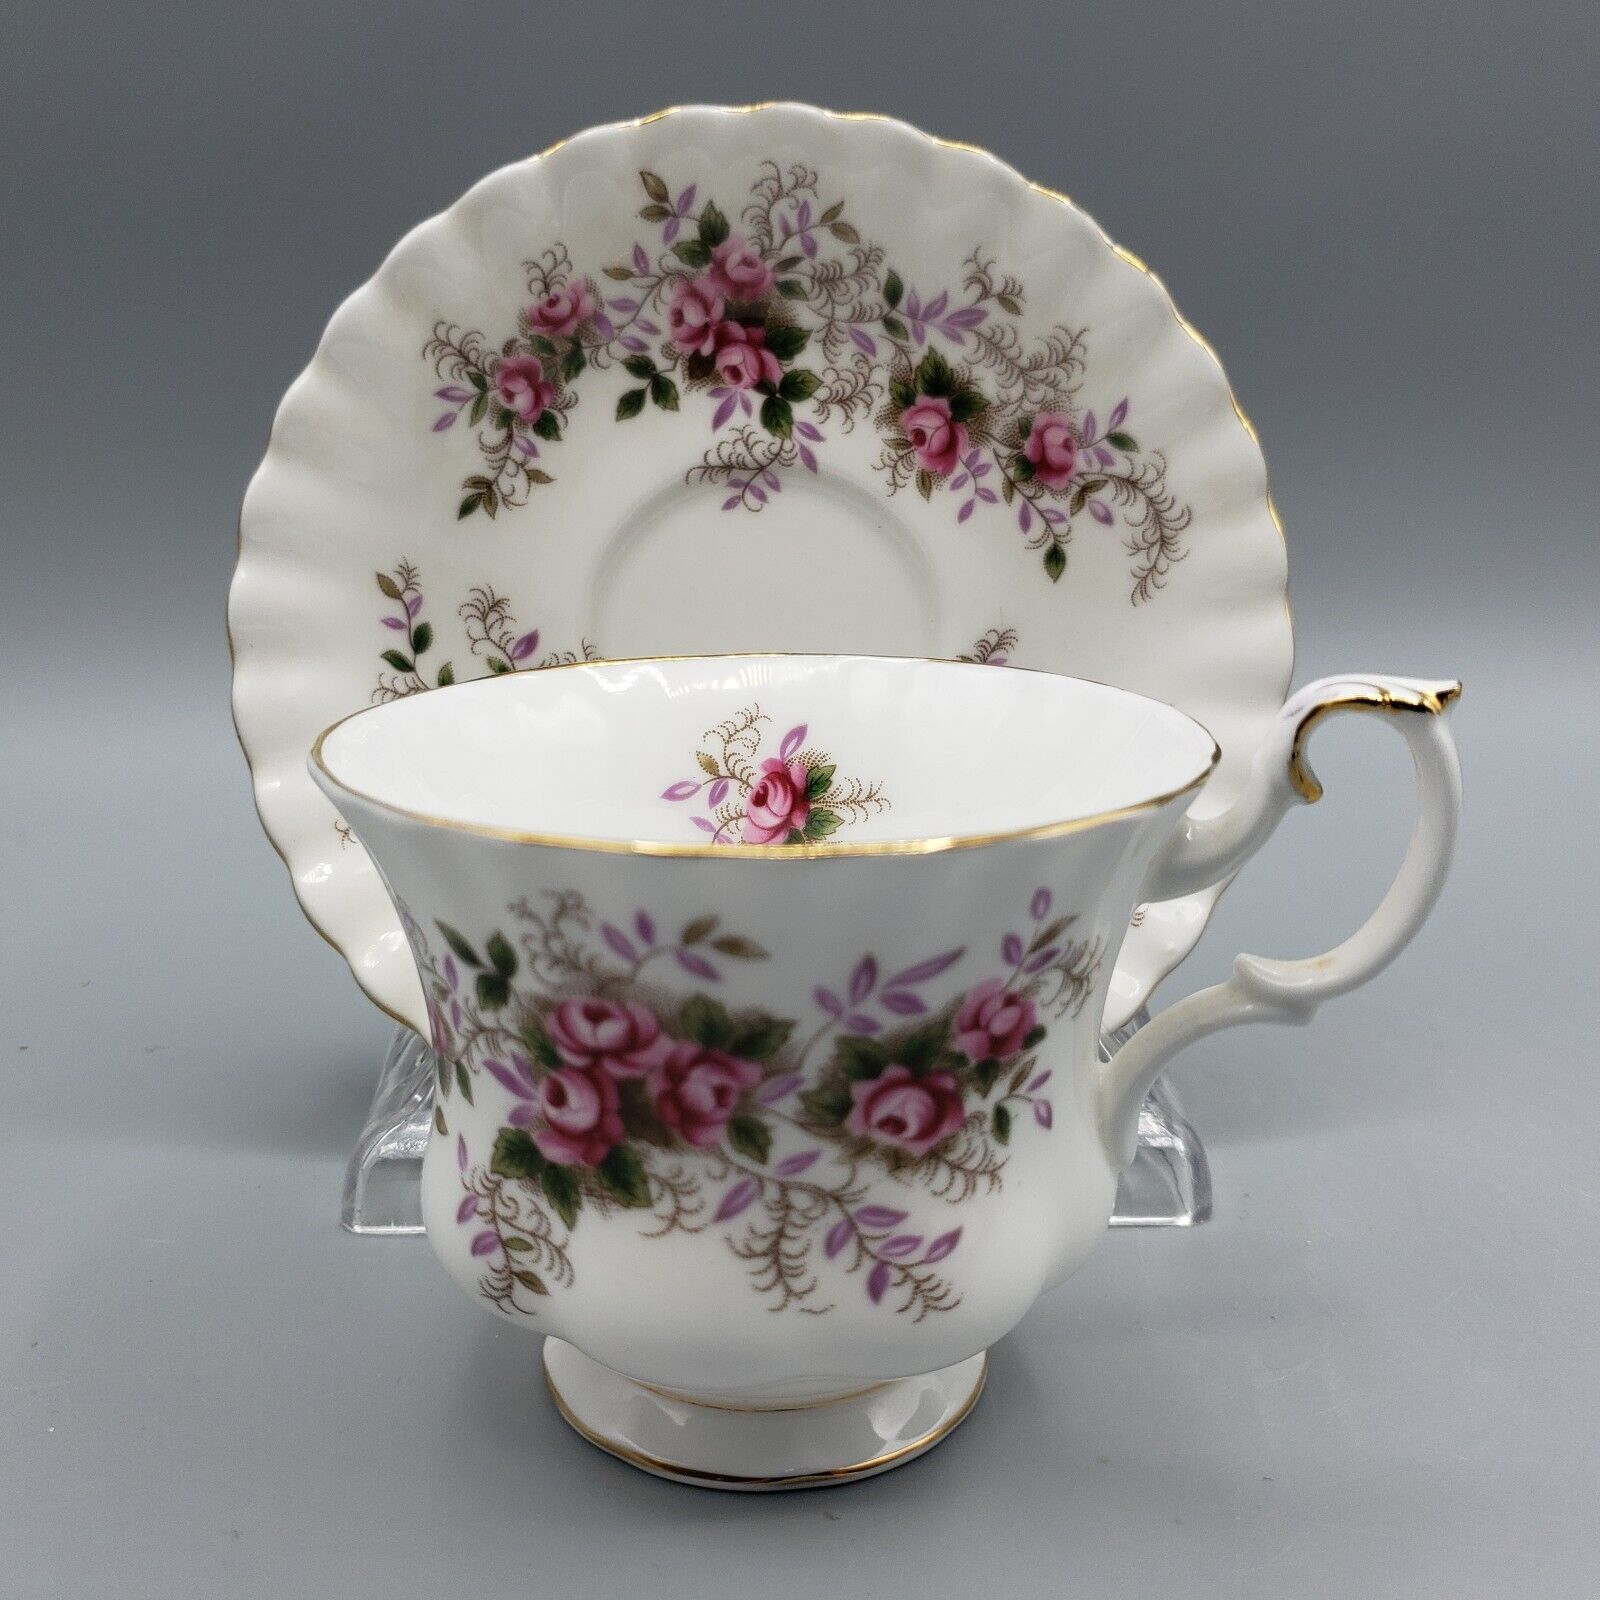 Vintage Royal Albert Fine Bone China Teacup & Saucer Lavender Rose England